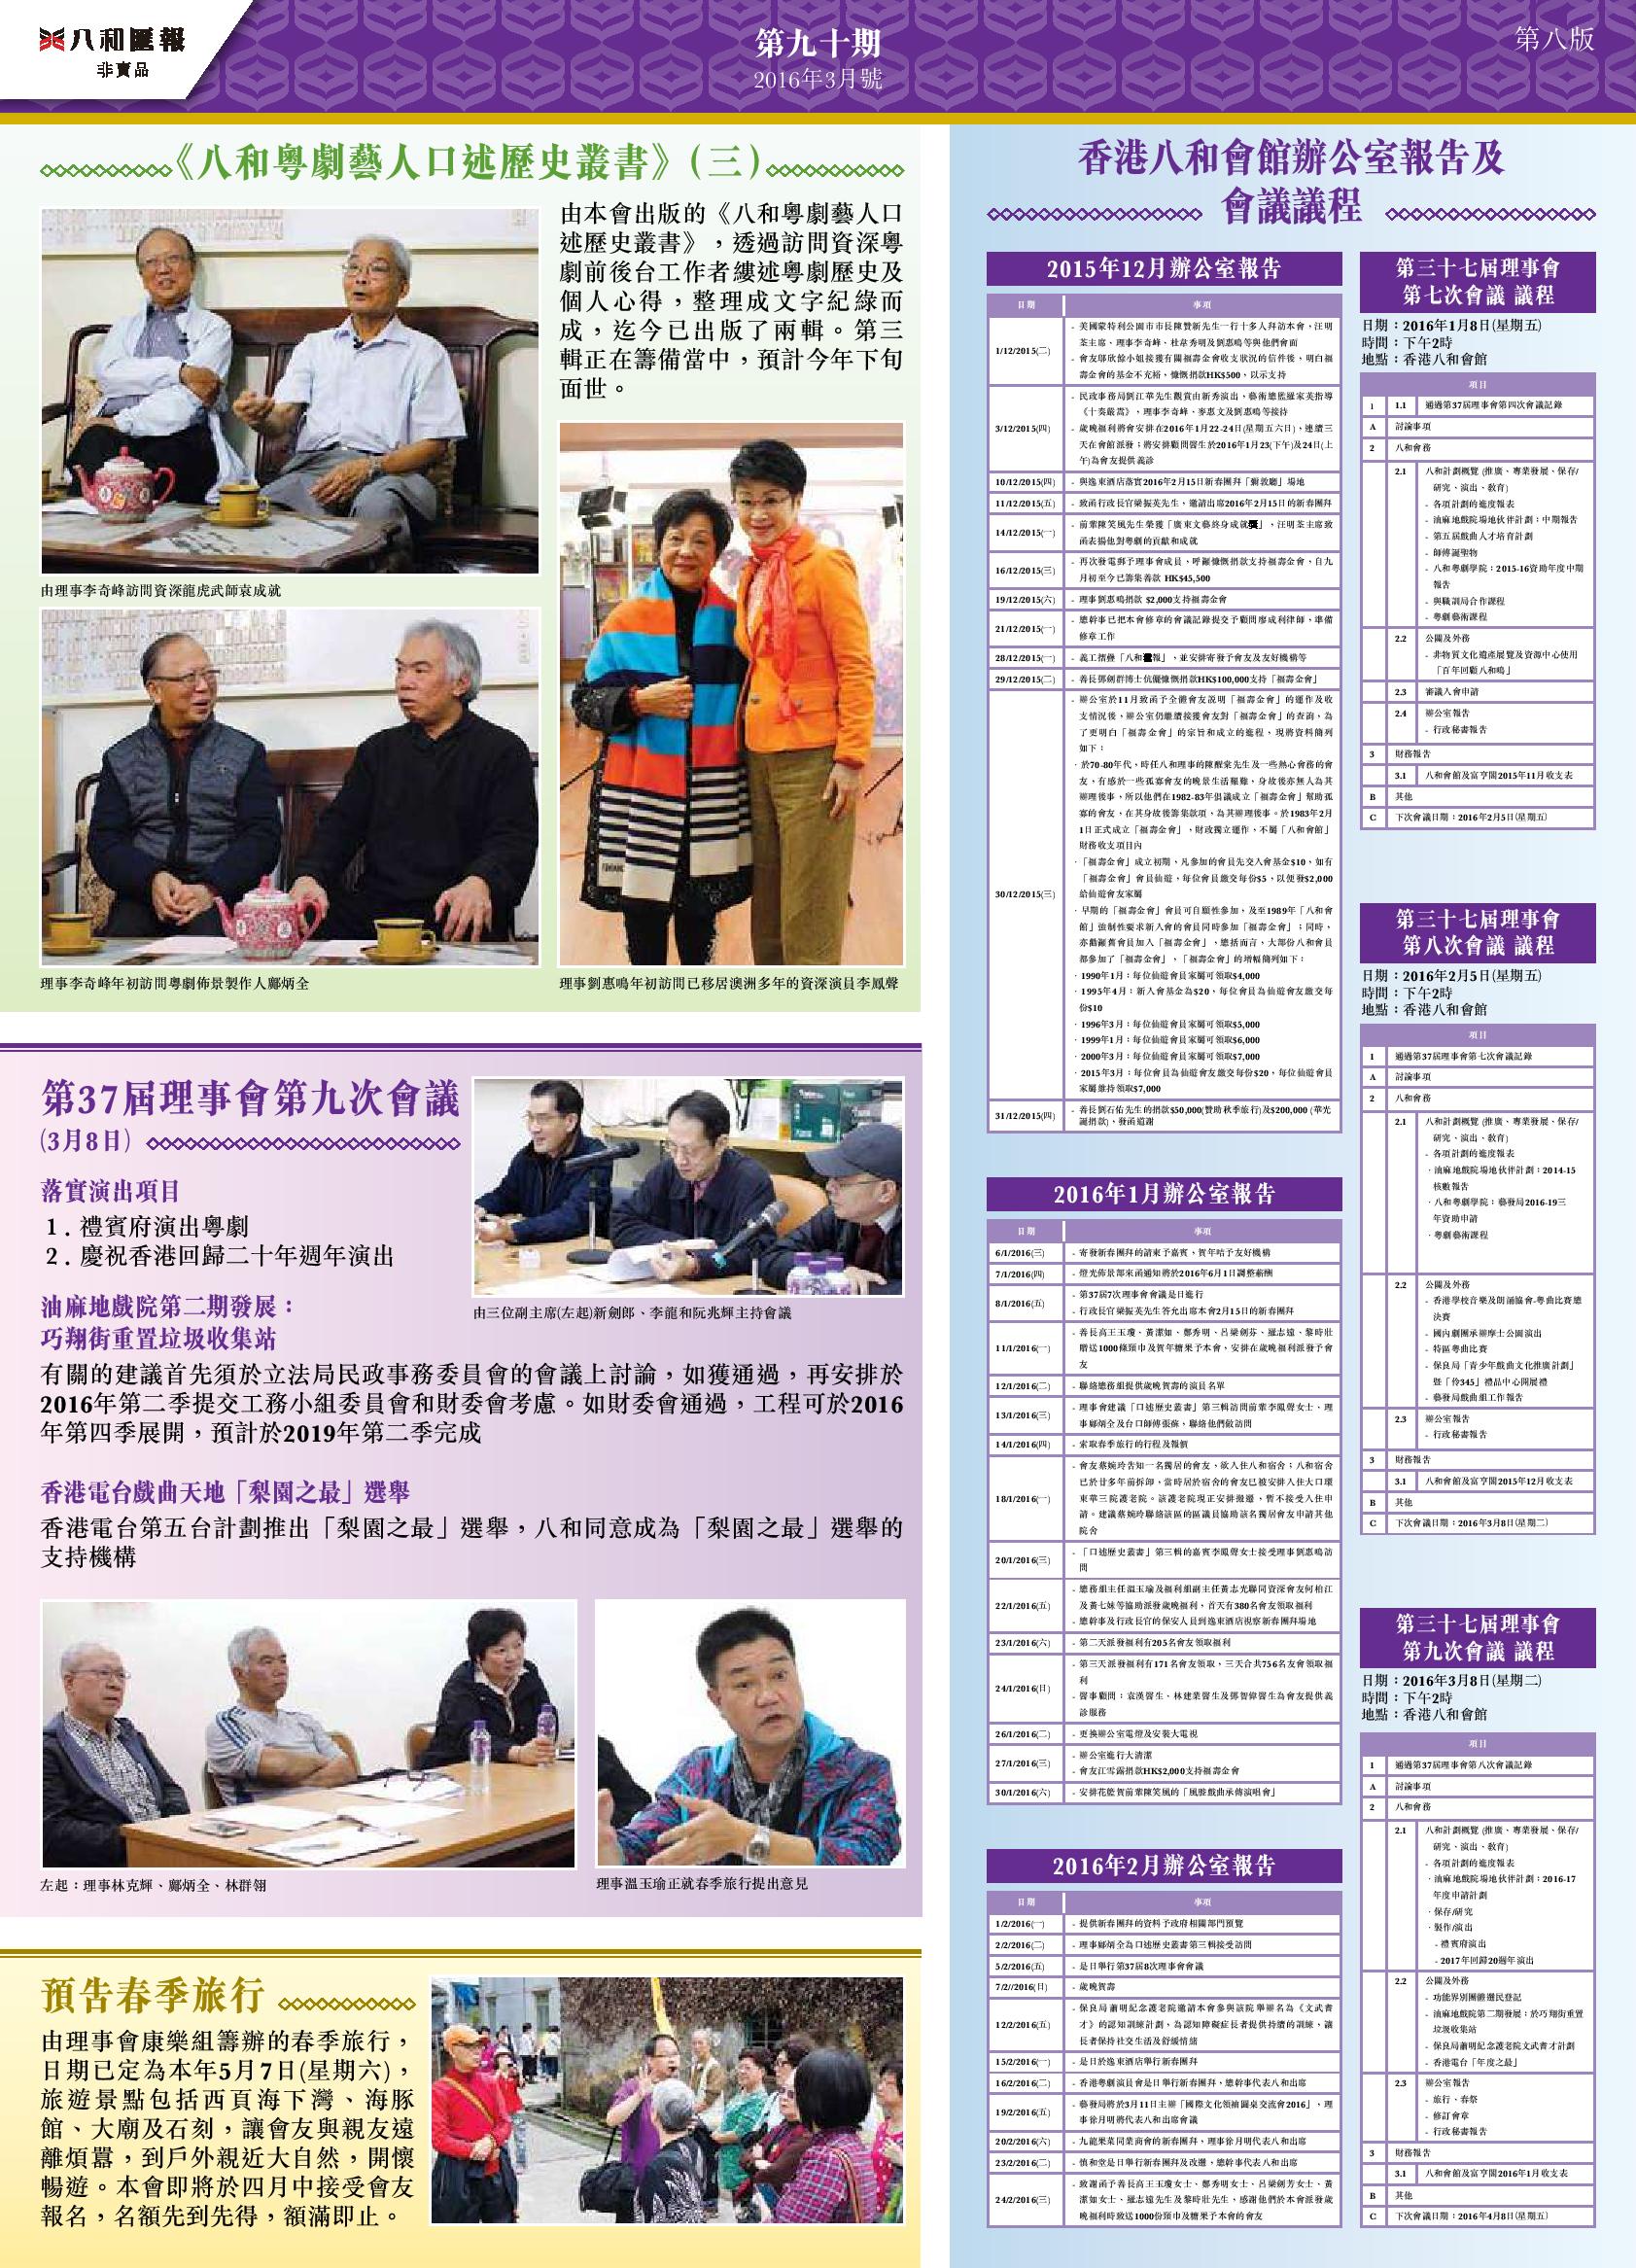 《八和粵劇藝人口述歷史叢書》（三）| 香港八和會館辦公室報告（2015年11月至2016年1月）及第三十七屆理事會第七至九次會議會議議程